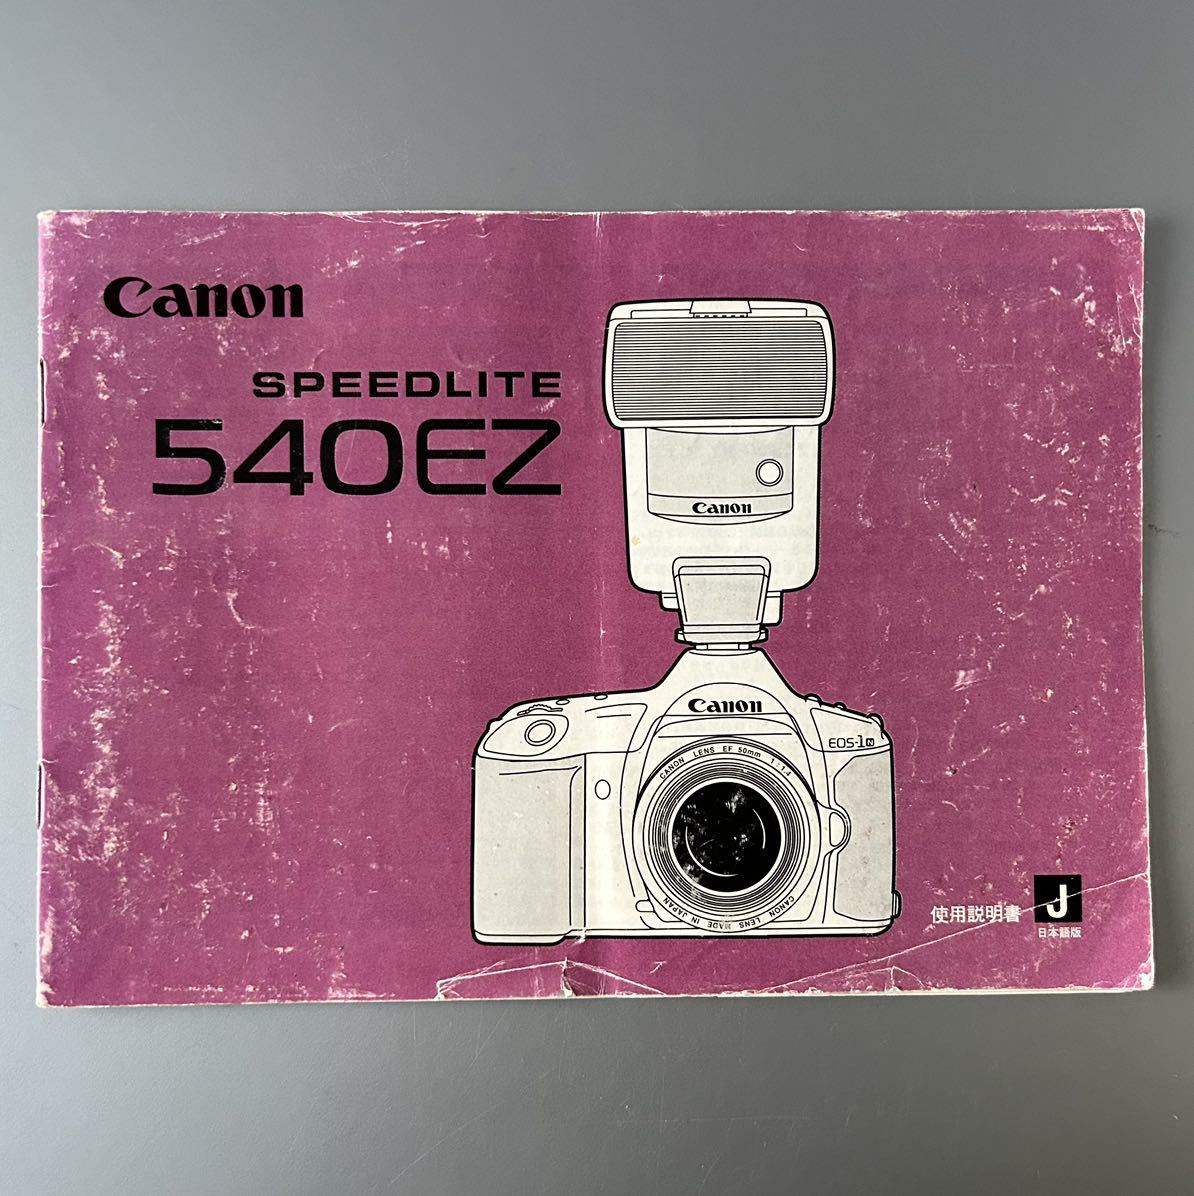 ［Canon SPEEDLITE 540EZ］キャノン スピードライト 540EZ 使用説明書（正規版・2色刷り・全31ページ） の画像1